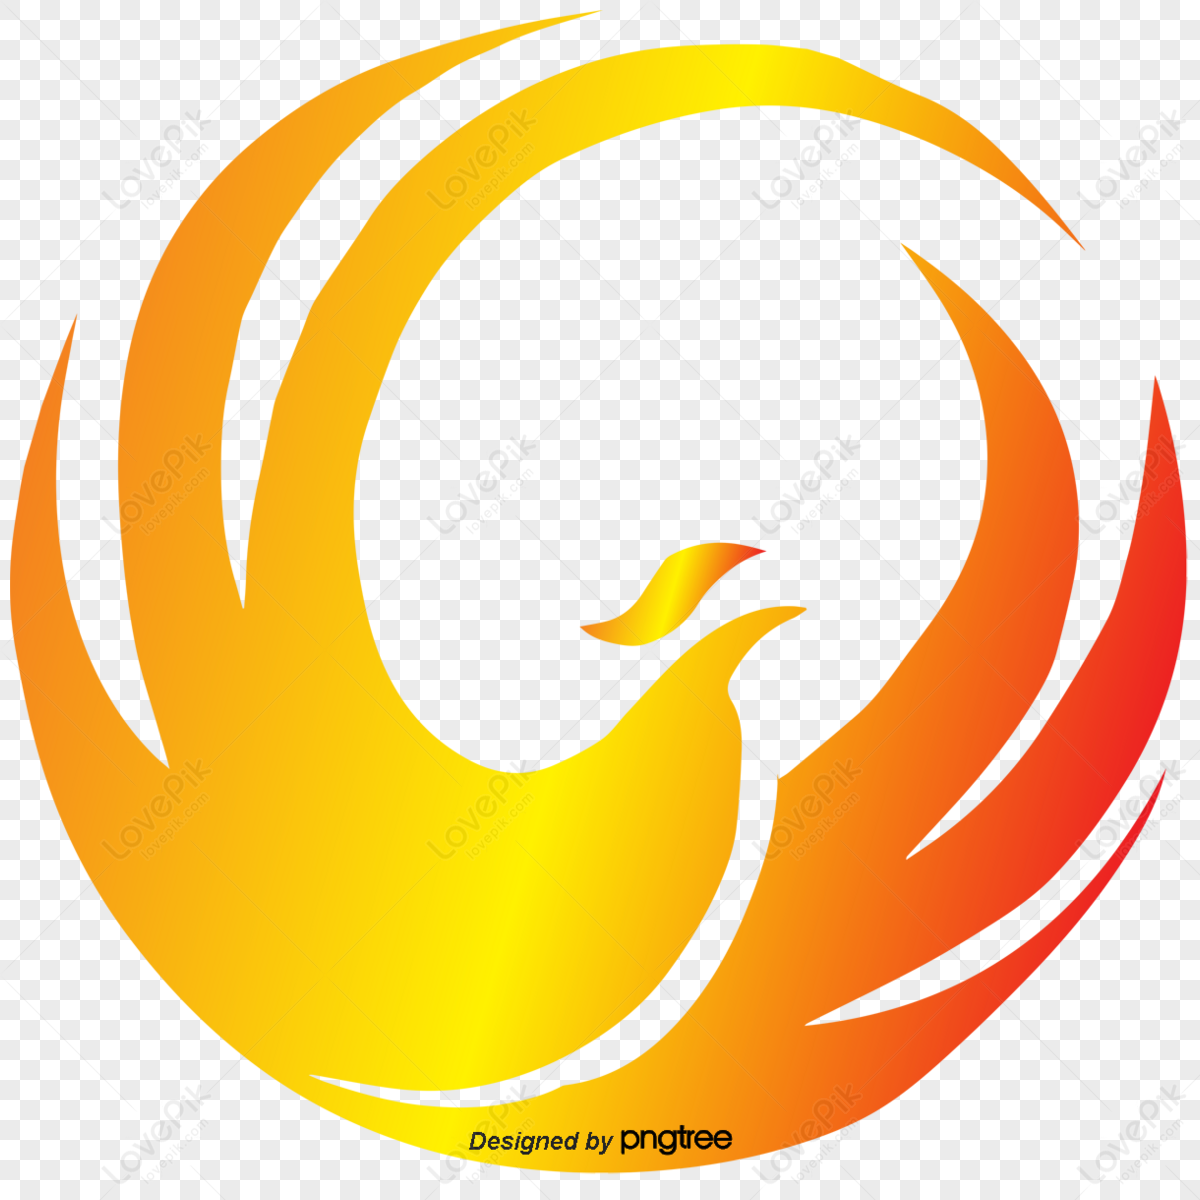 Phoenix Logo Hd Transparent, Gradient Flame Phoenix Logo, Flame, Phoenix,  Bird PNG Image For Free Download